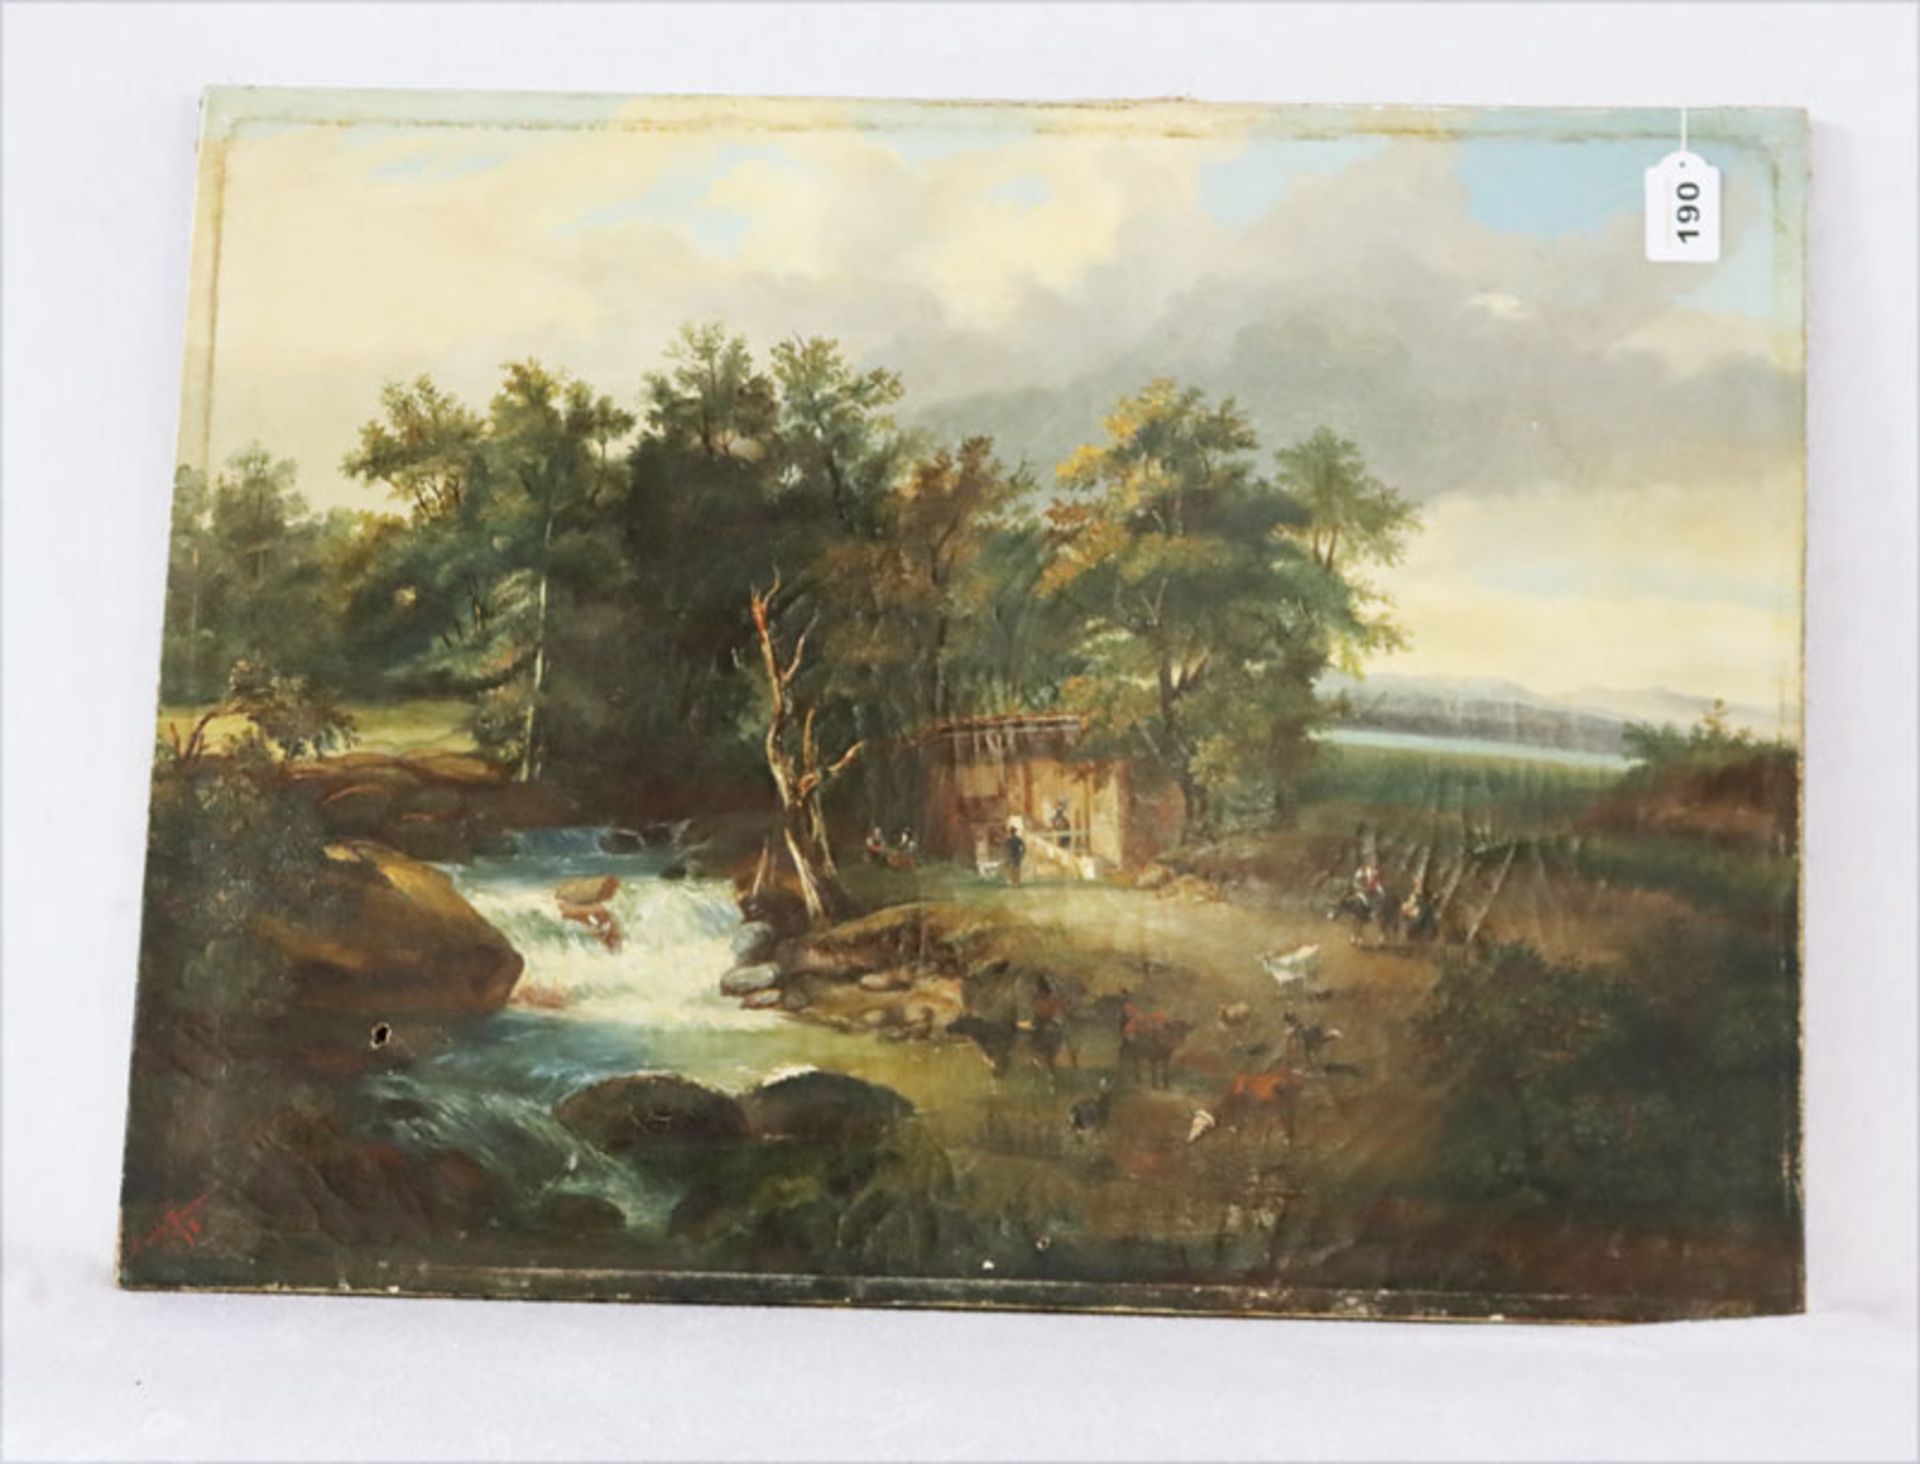 Gemälde ÖL/LW 'Landschafts-Szenerie mit Bauern und Tieren am Flußlauf', signiert Marie Gar ...?